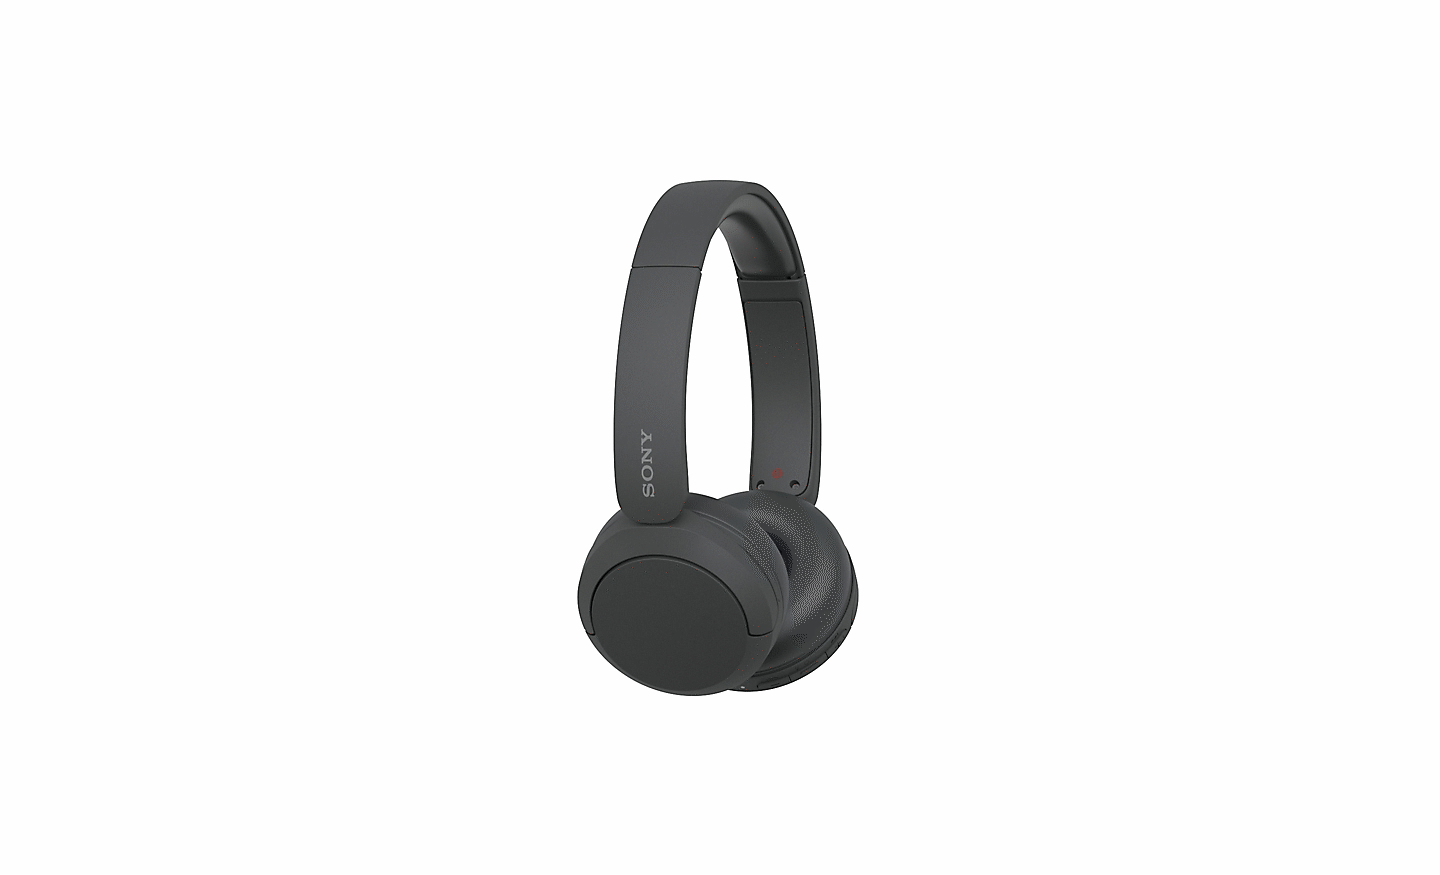 흰색 배경 위에 있는 블랙 색상의 소니 WH-CH520 헤드폰 이미지